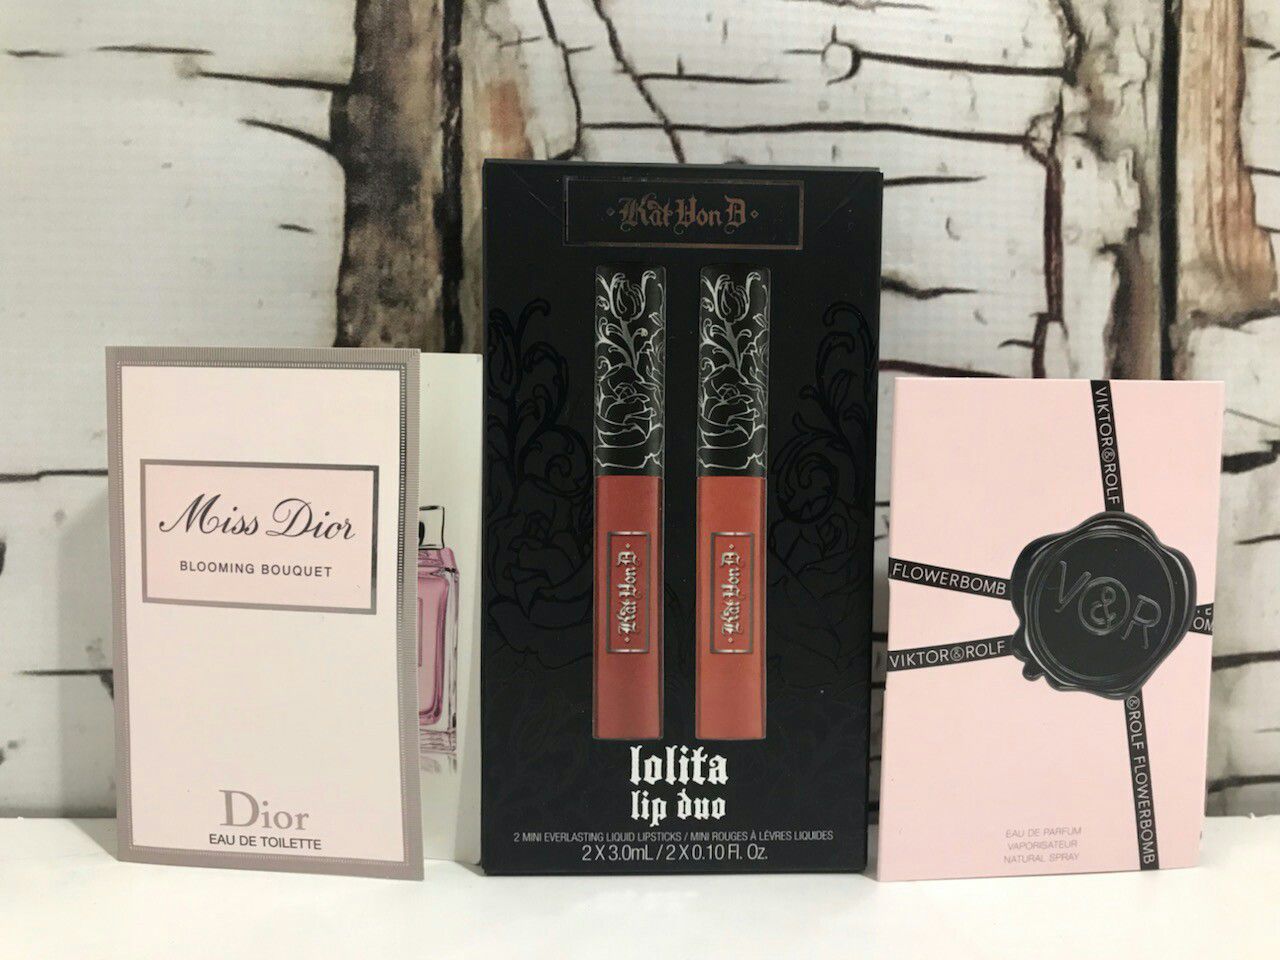 Vegan Kat Von D Lolita liquid Lipstick and Dior Sample Perfume